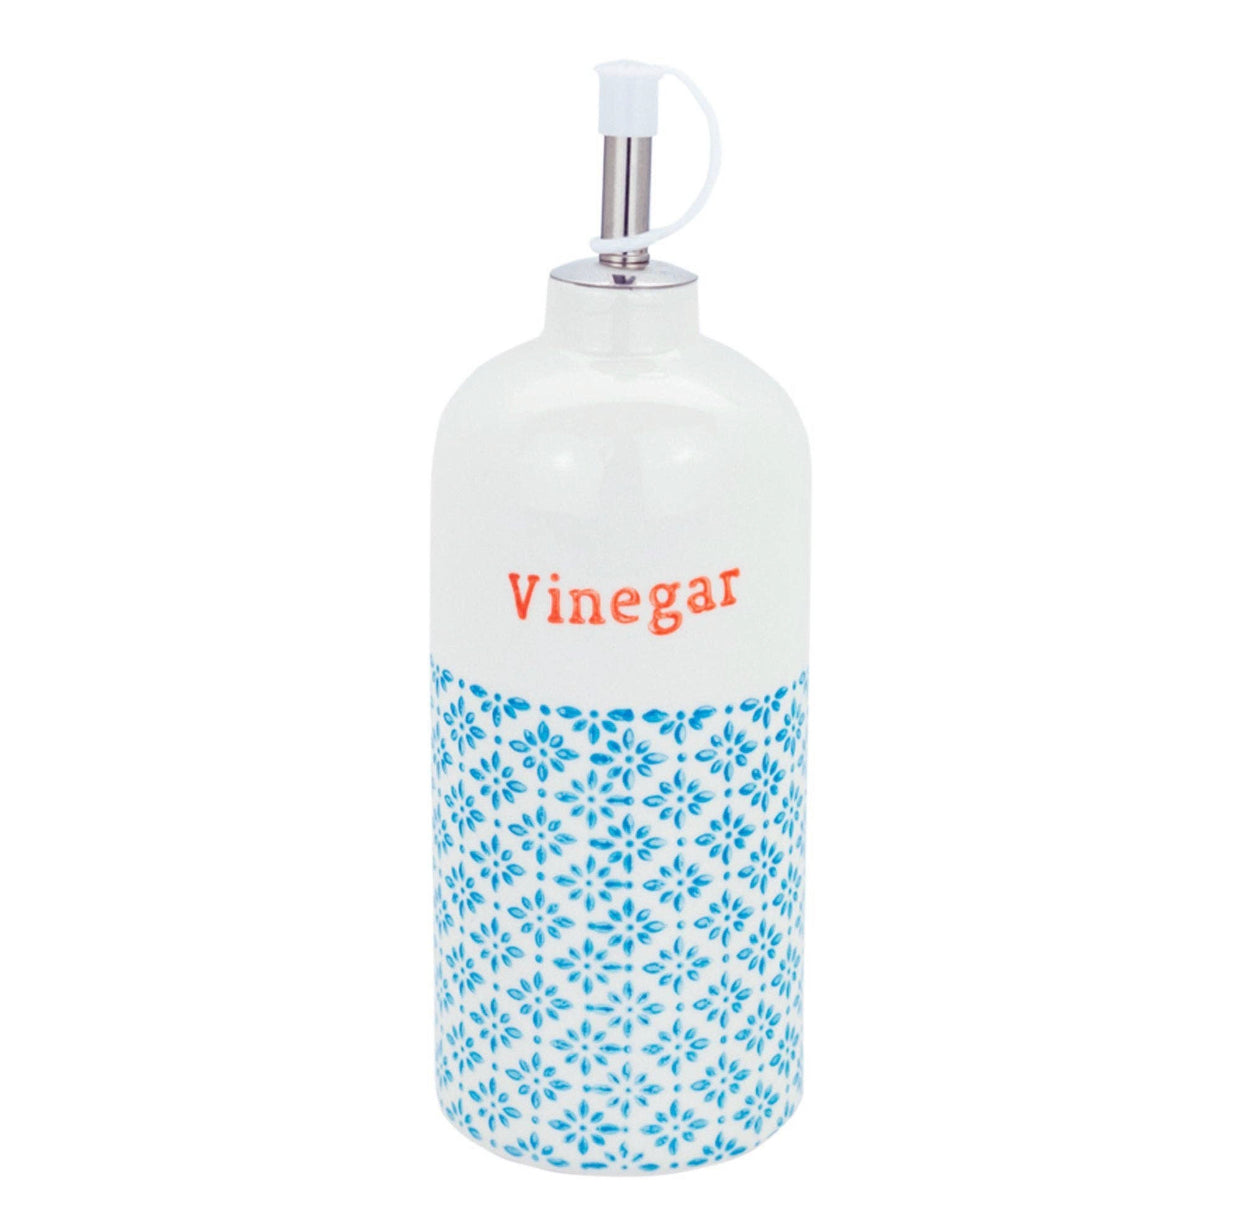 Patterned Oil/Vinegar Bottles